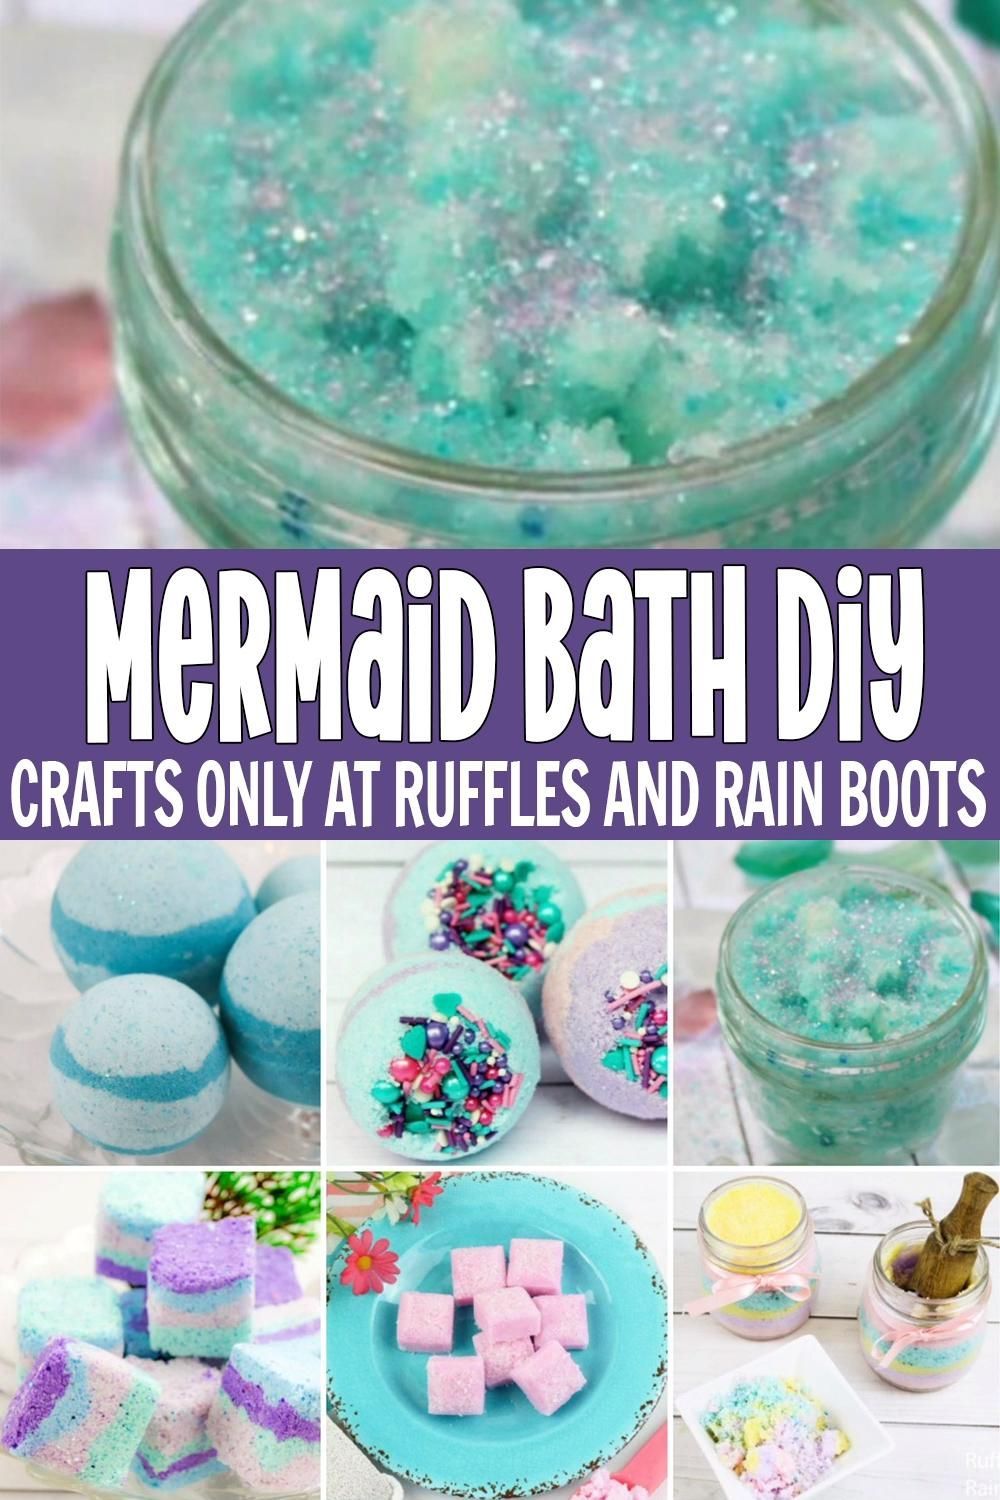 Easy to Make Mermaid Bath Bombs & Sugar Scrubs - Easy to Make Mermaid Bath Bombs & Sugar Scrubs -   24 diy Videos bath bombs ideas